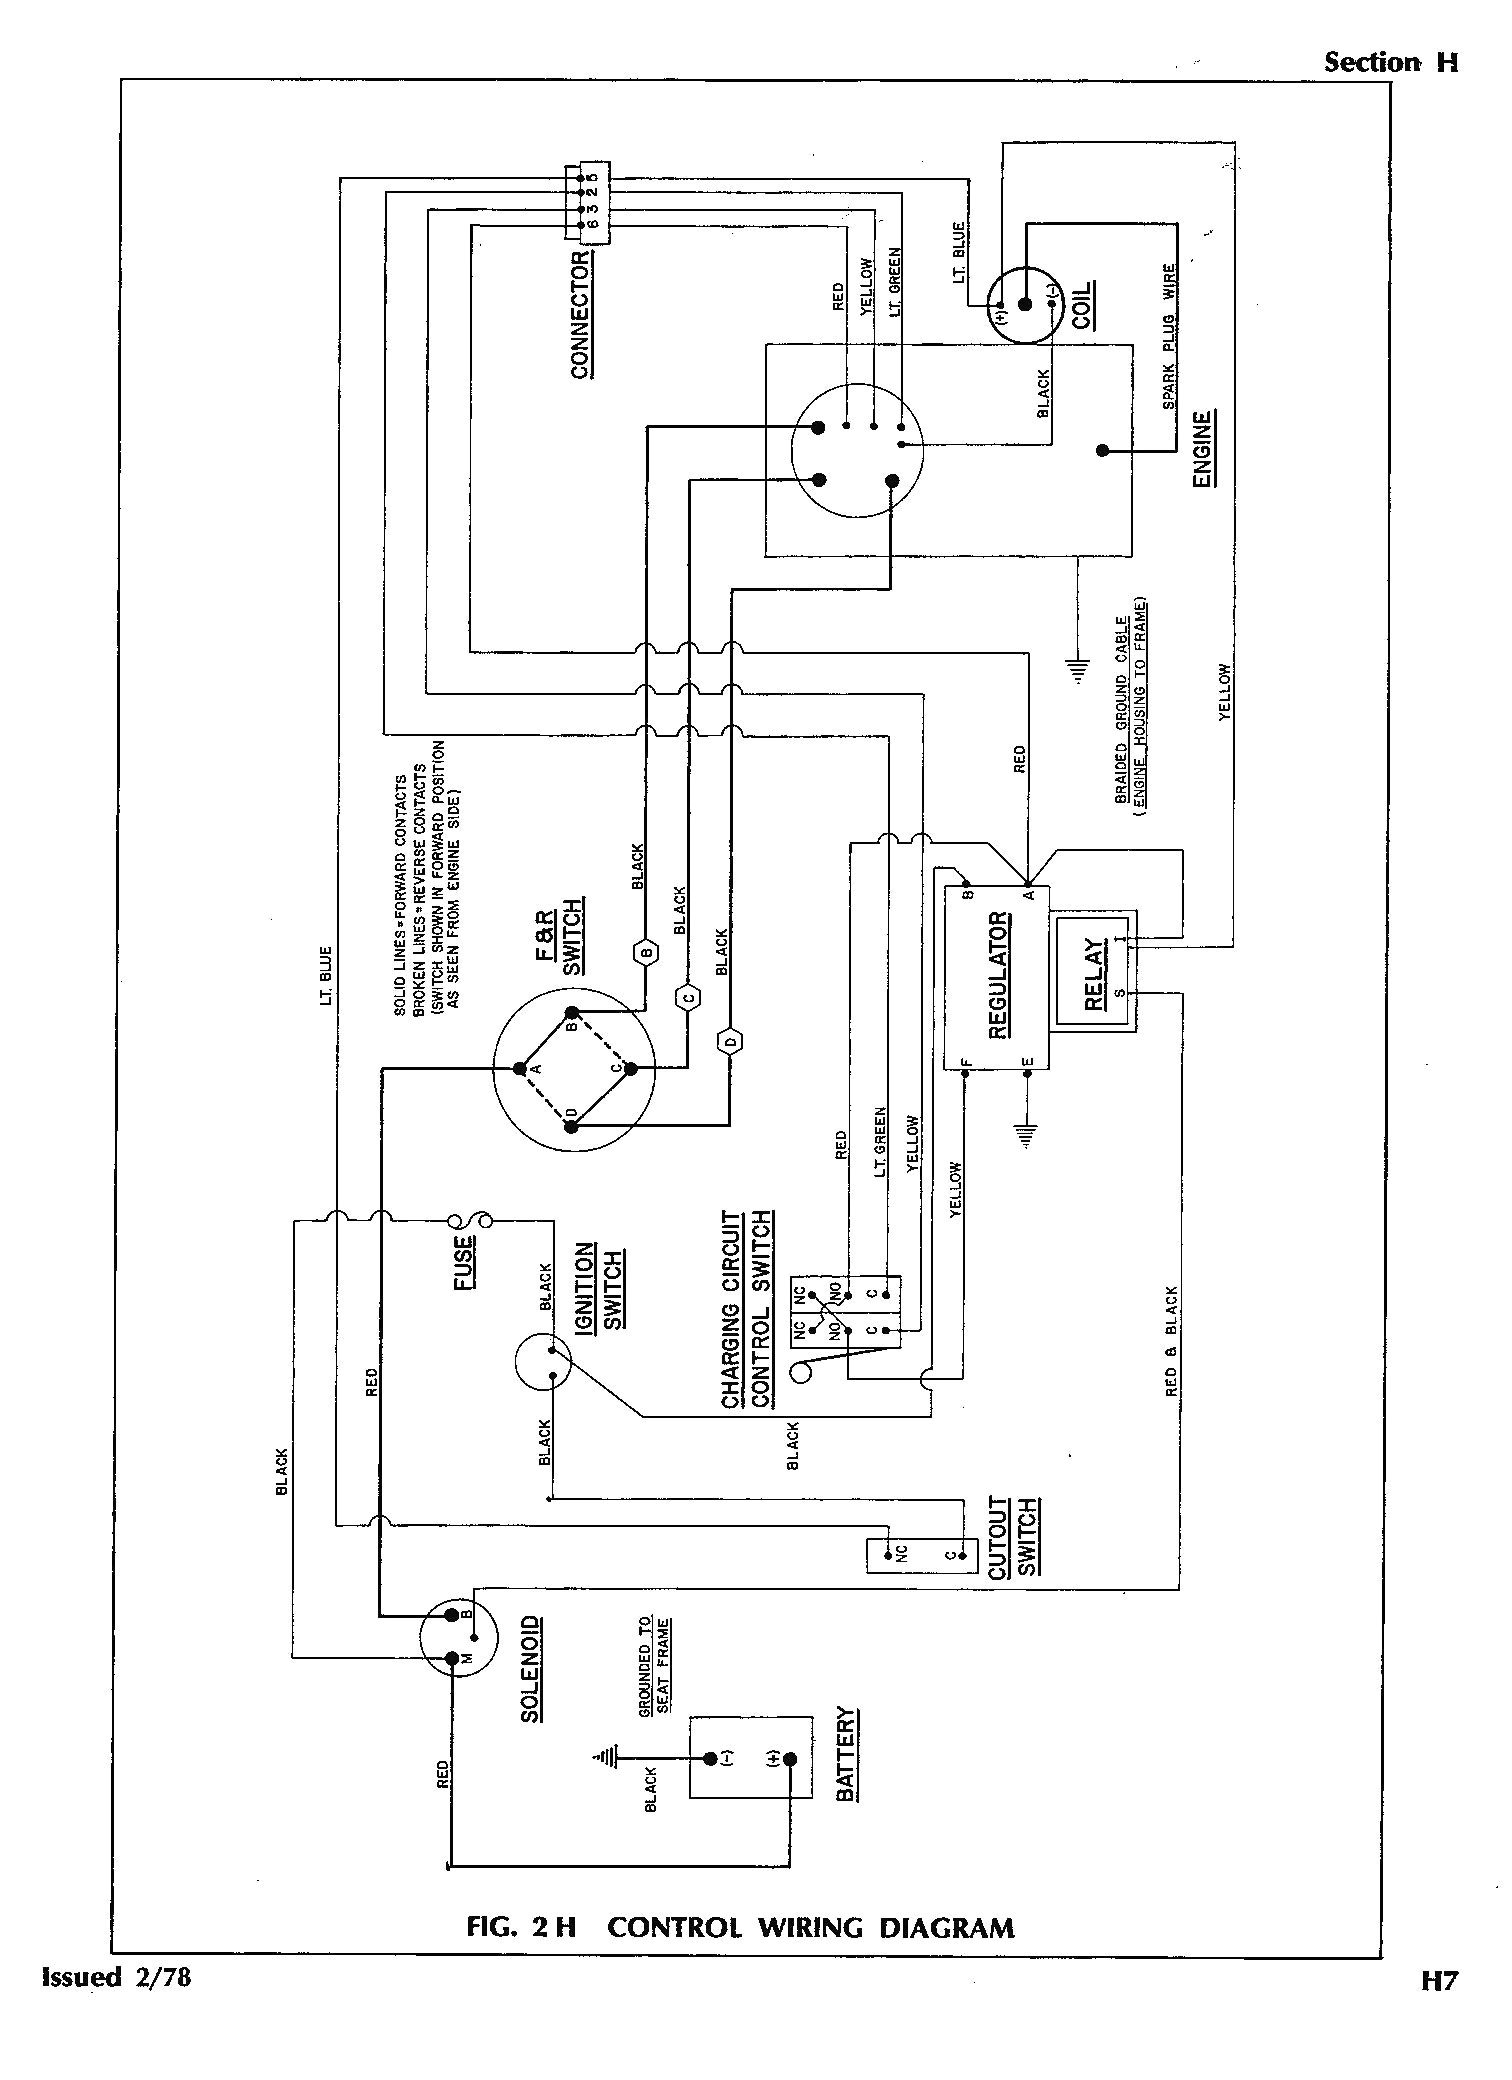 ezgo txt engine wiring diagram wiring diagram sample 2000 ez go wiring diagram wiring diagram mega